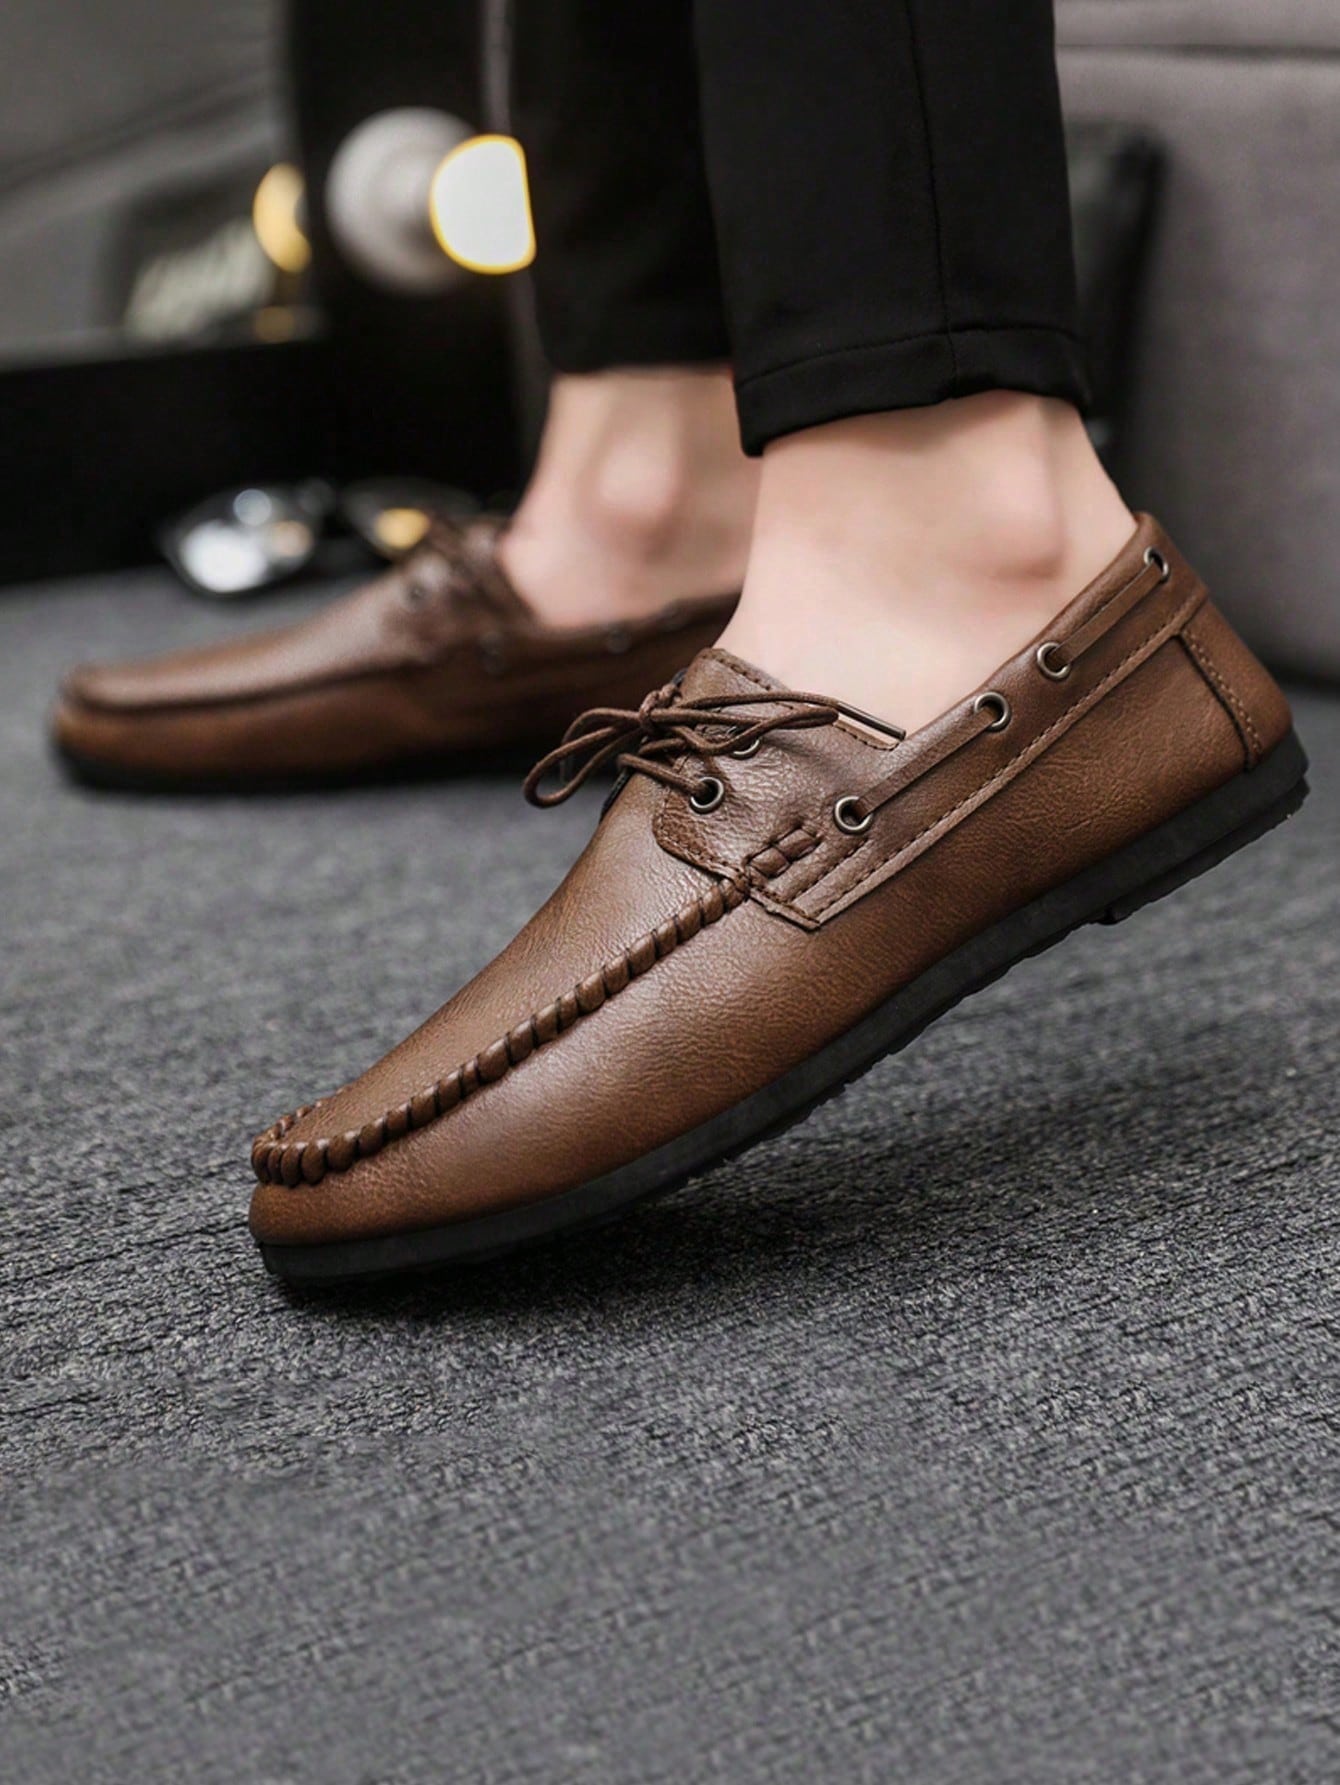 Официальные повседневные кожаные туфли в британском стиле на шнуровке для мужчин, коричневый женские повседневные туфли whnb белые удобные лоферы из мягкой искусственной кожи на плоской подошве на шнуровке с вулканизированной подош